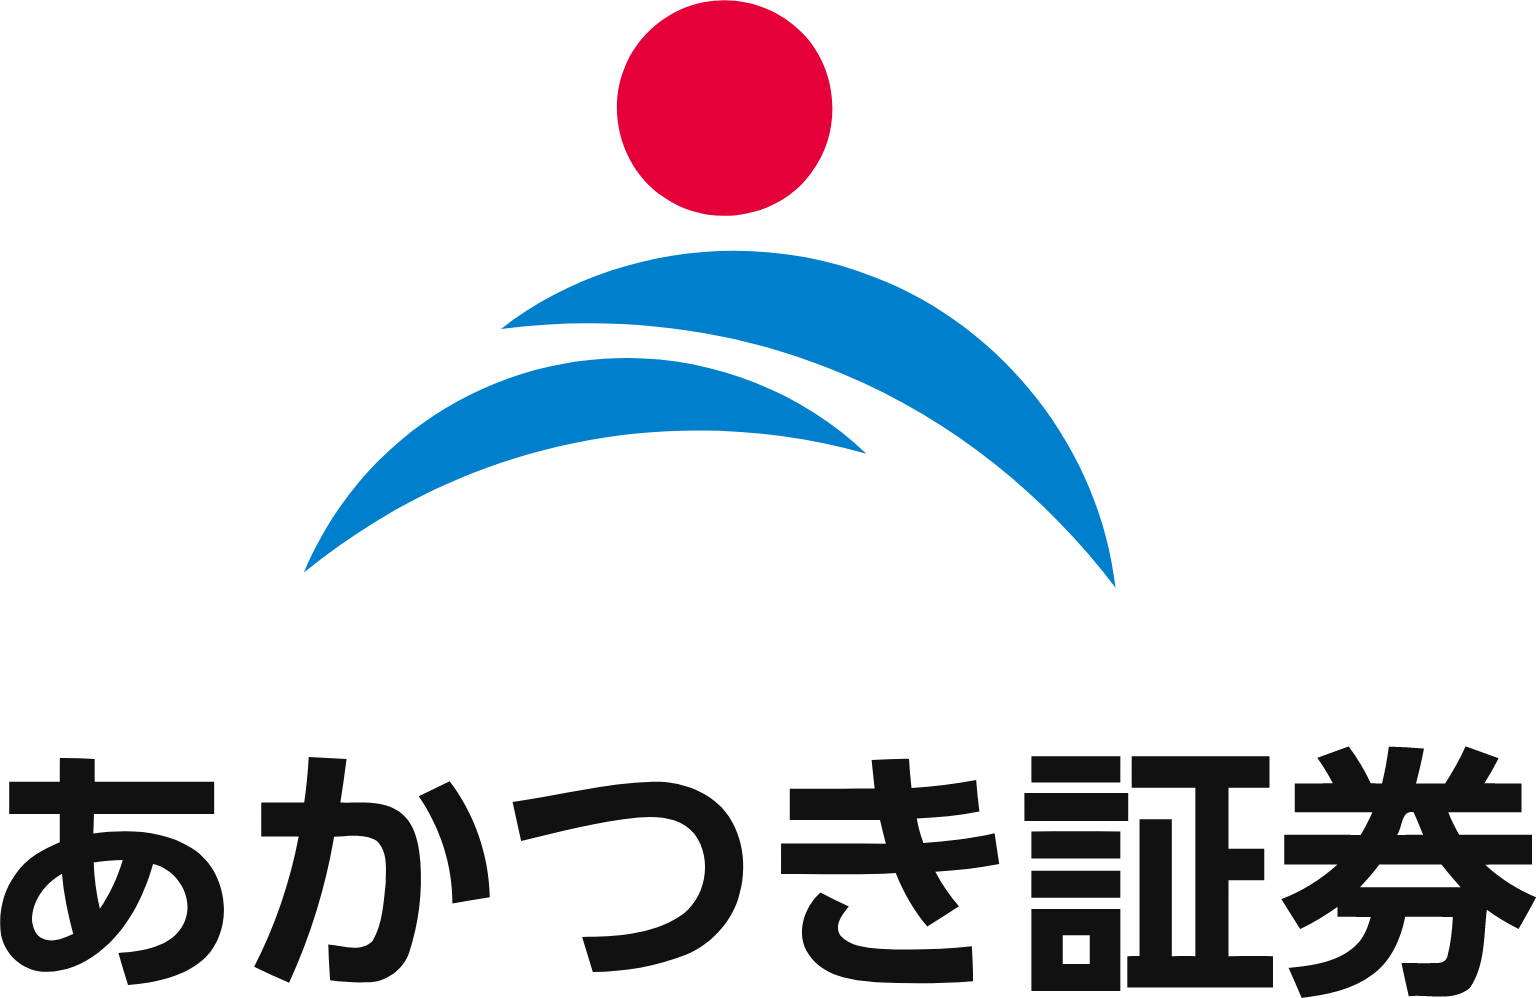 Akatsuki Corp. logo large (transparent PNG)